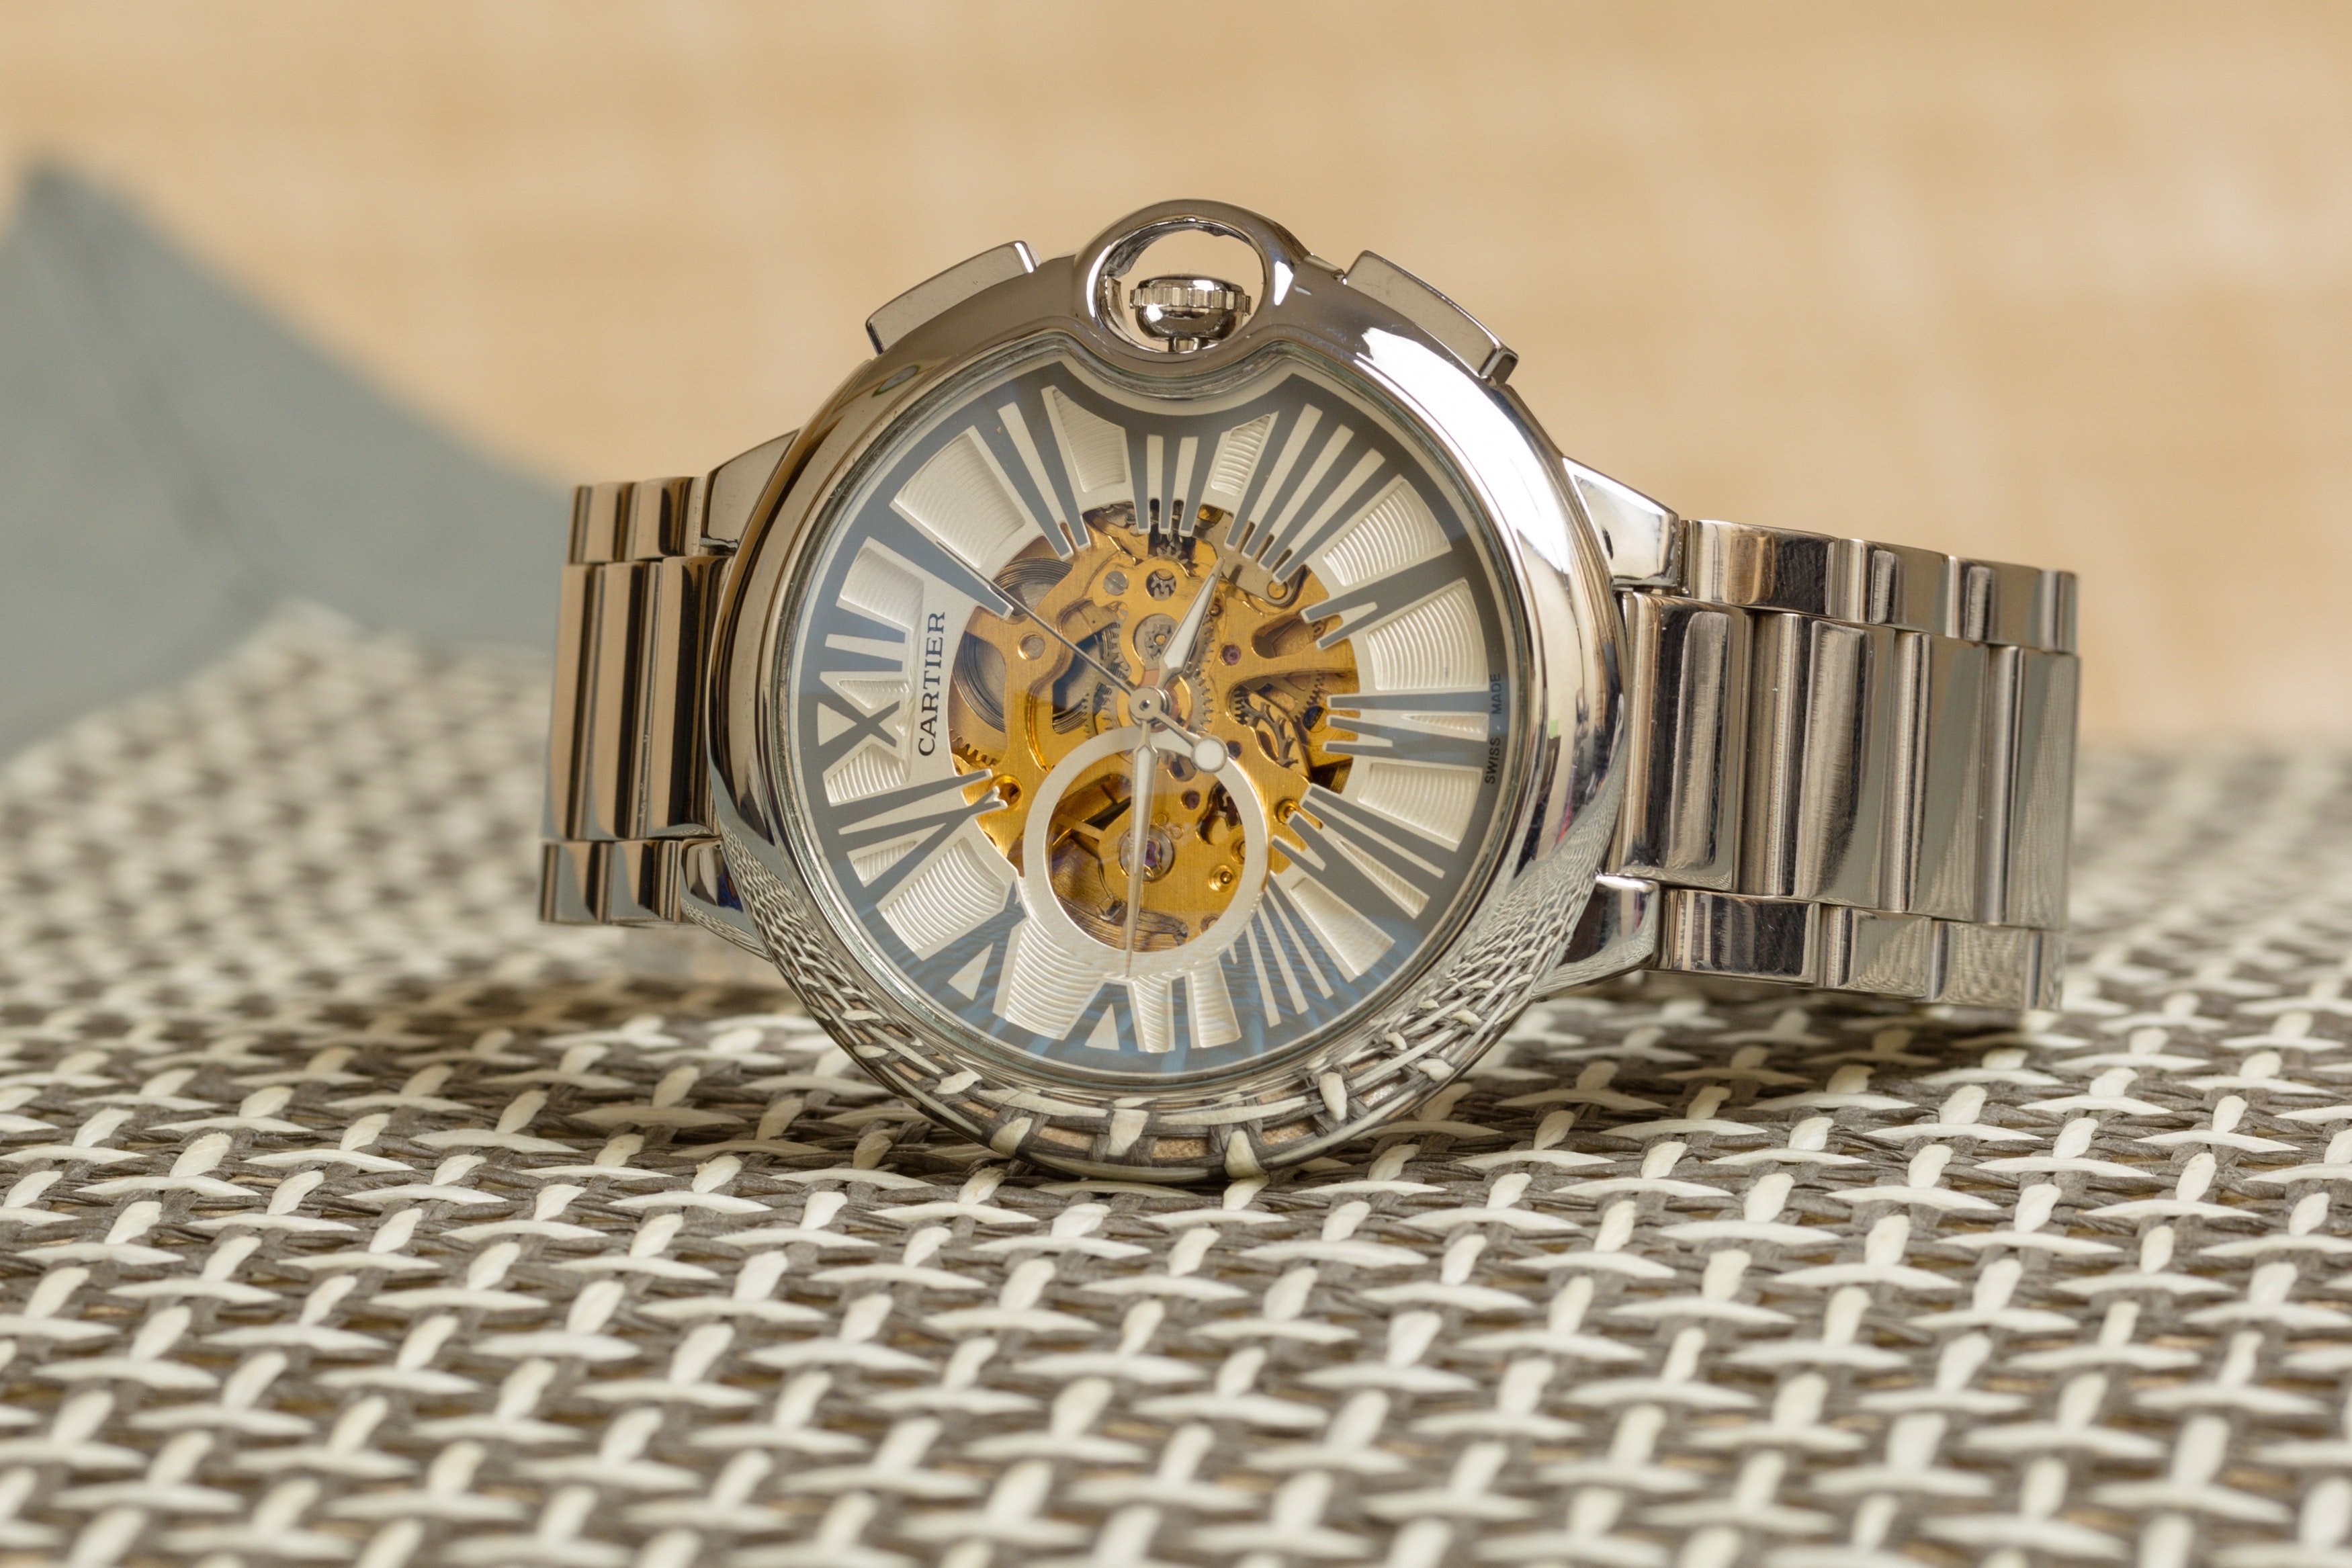 Diana hat gespart, um Adam eine Uhr für sein Abschlussgeschenk zu kaufen. | Quelle: Pexels